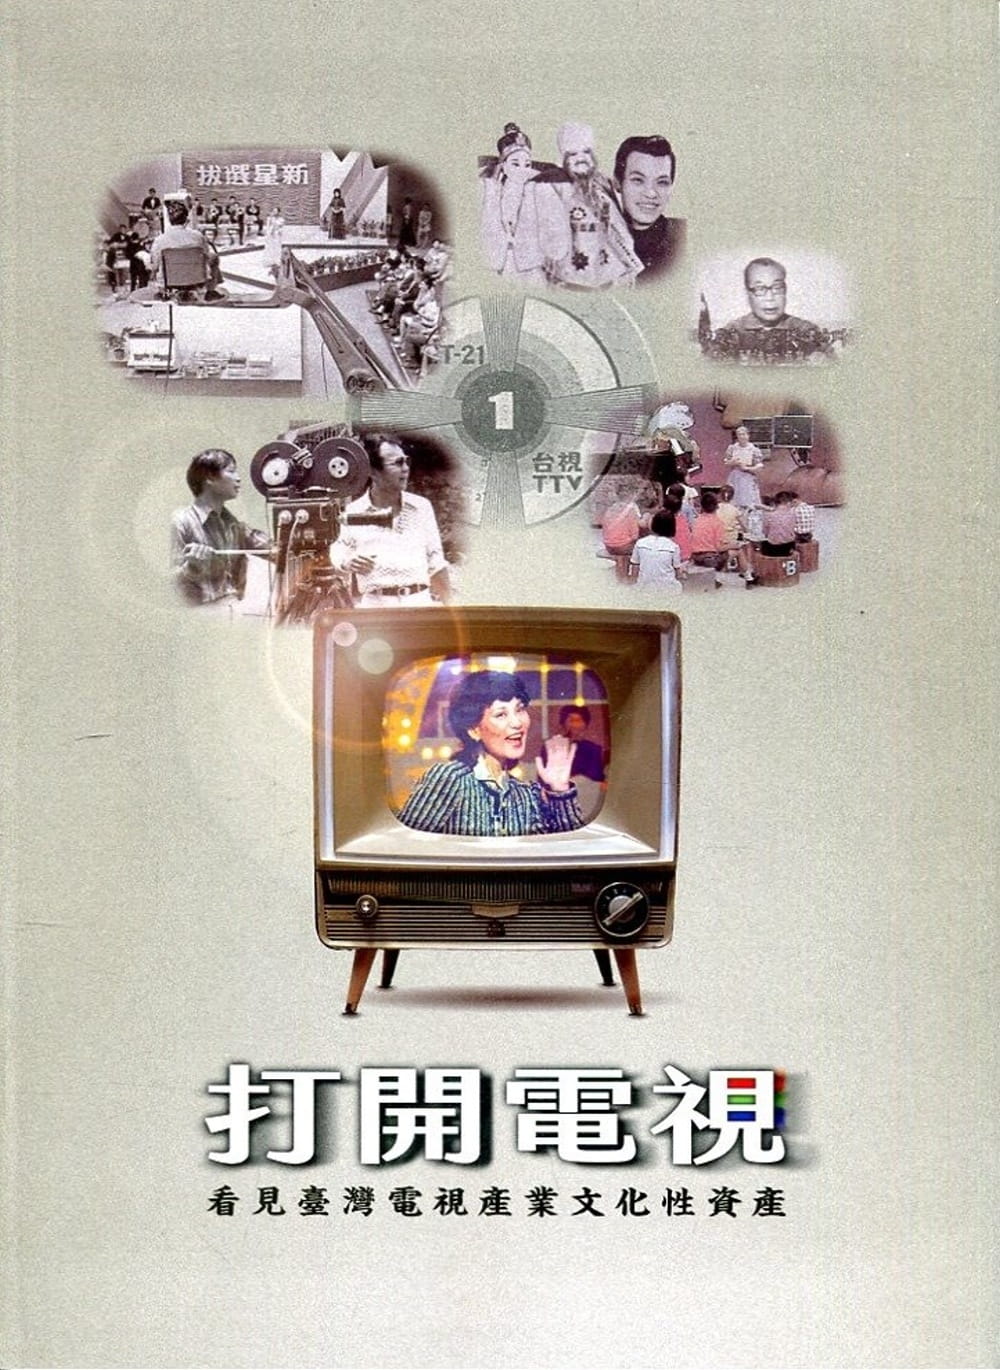 打開電視：看見臺灣電視產業文化性資產